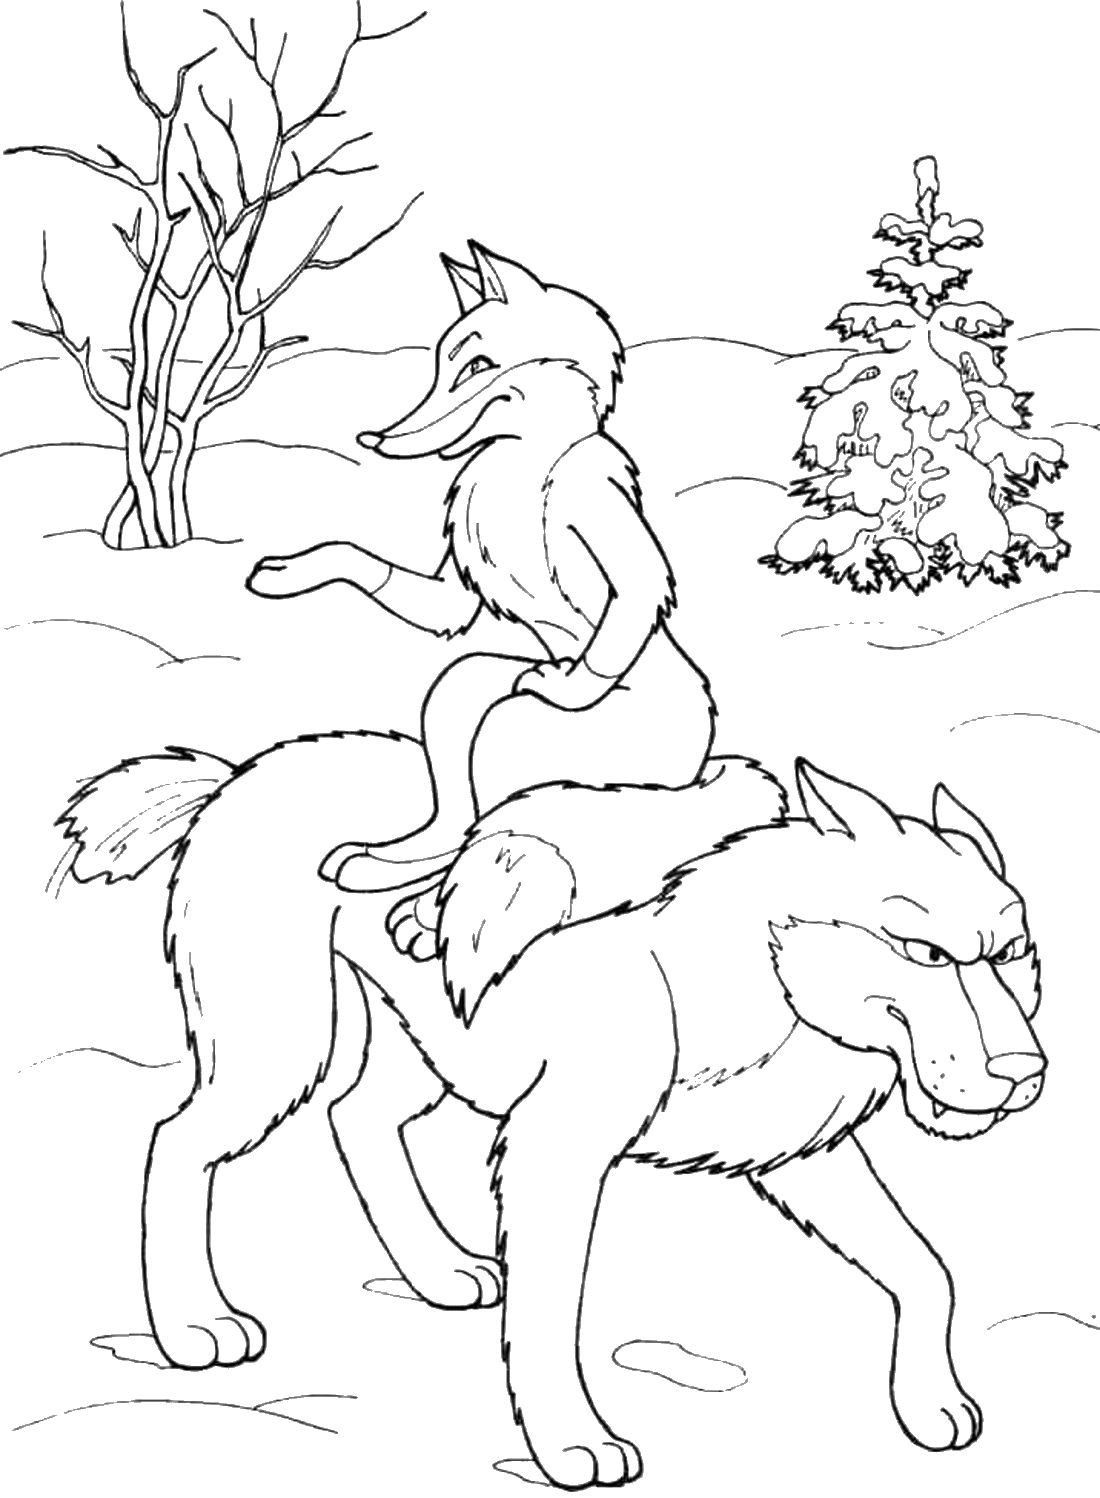 Лиса и волк раскраска для детей, скачать и распечатать бесплатно